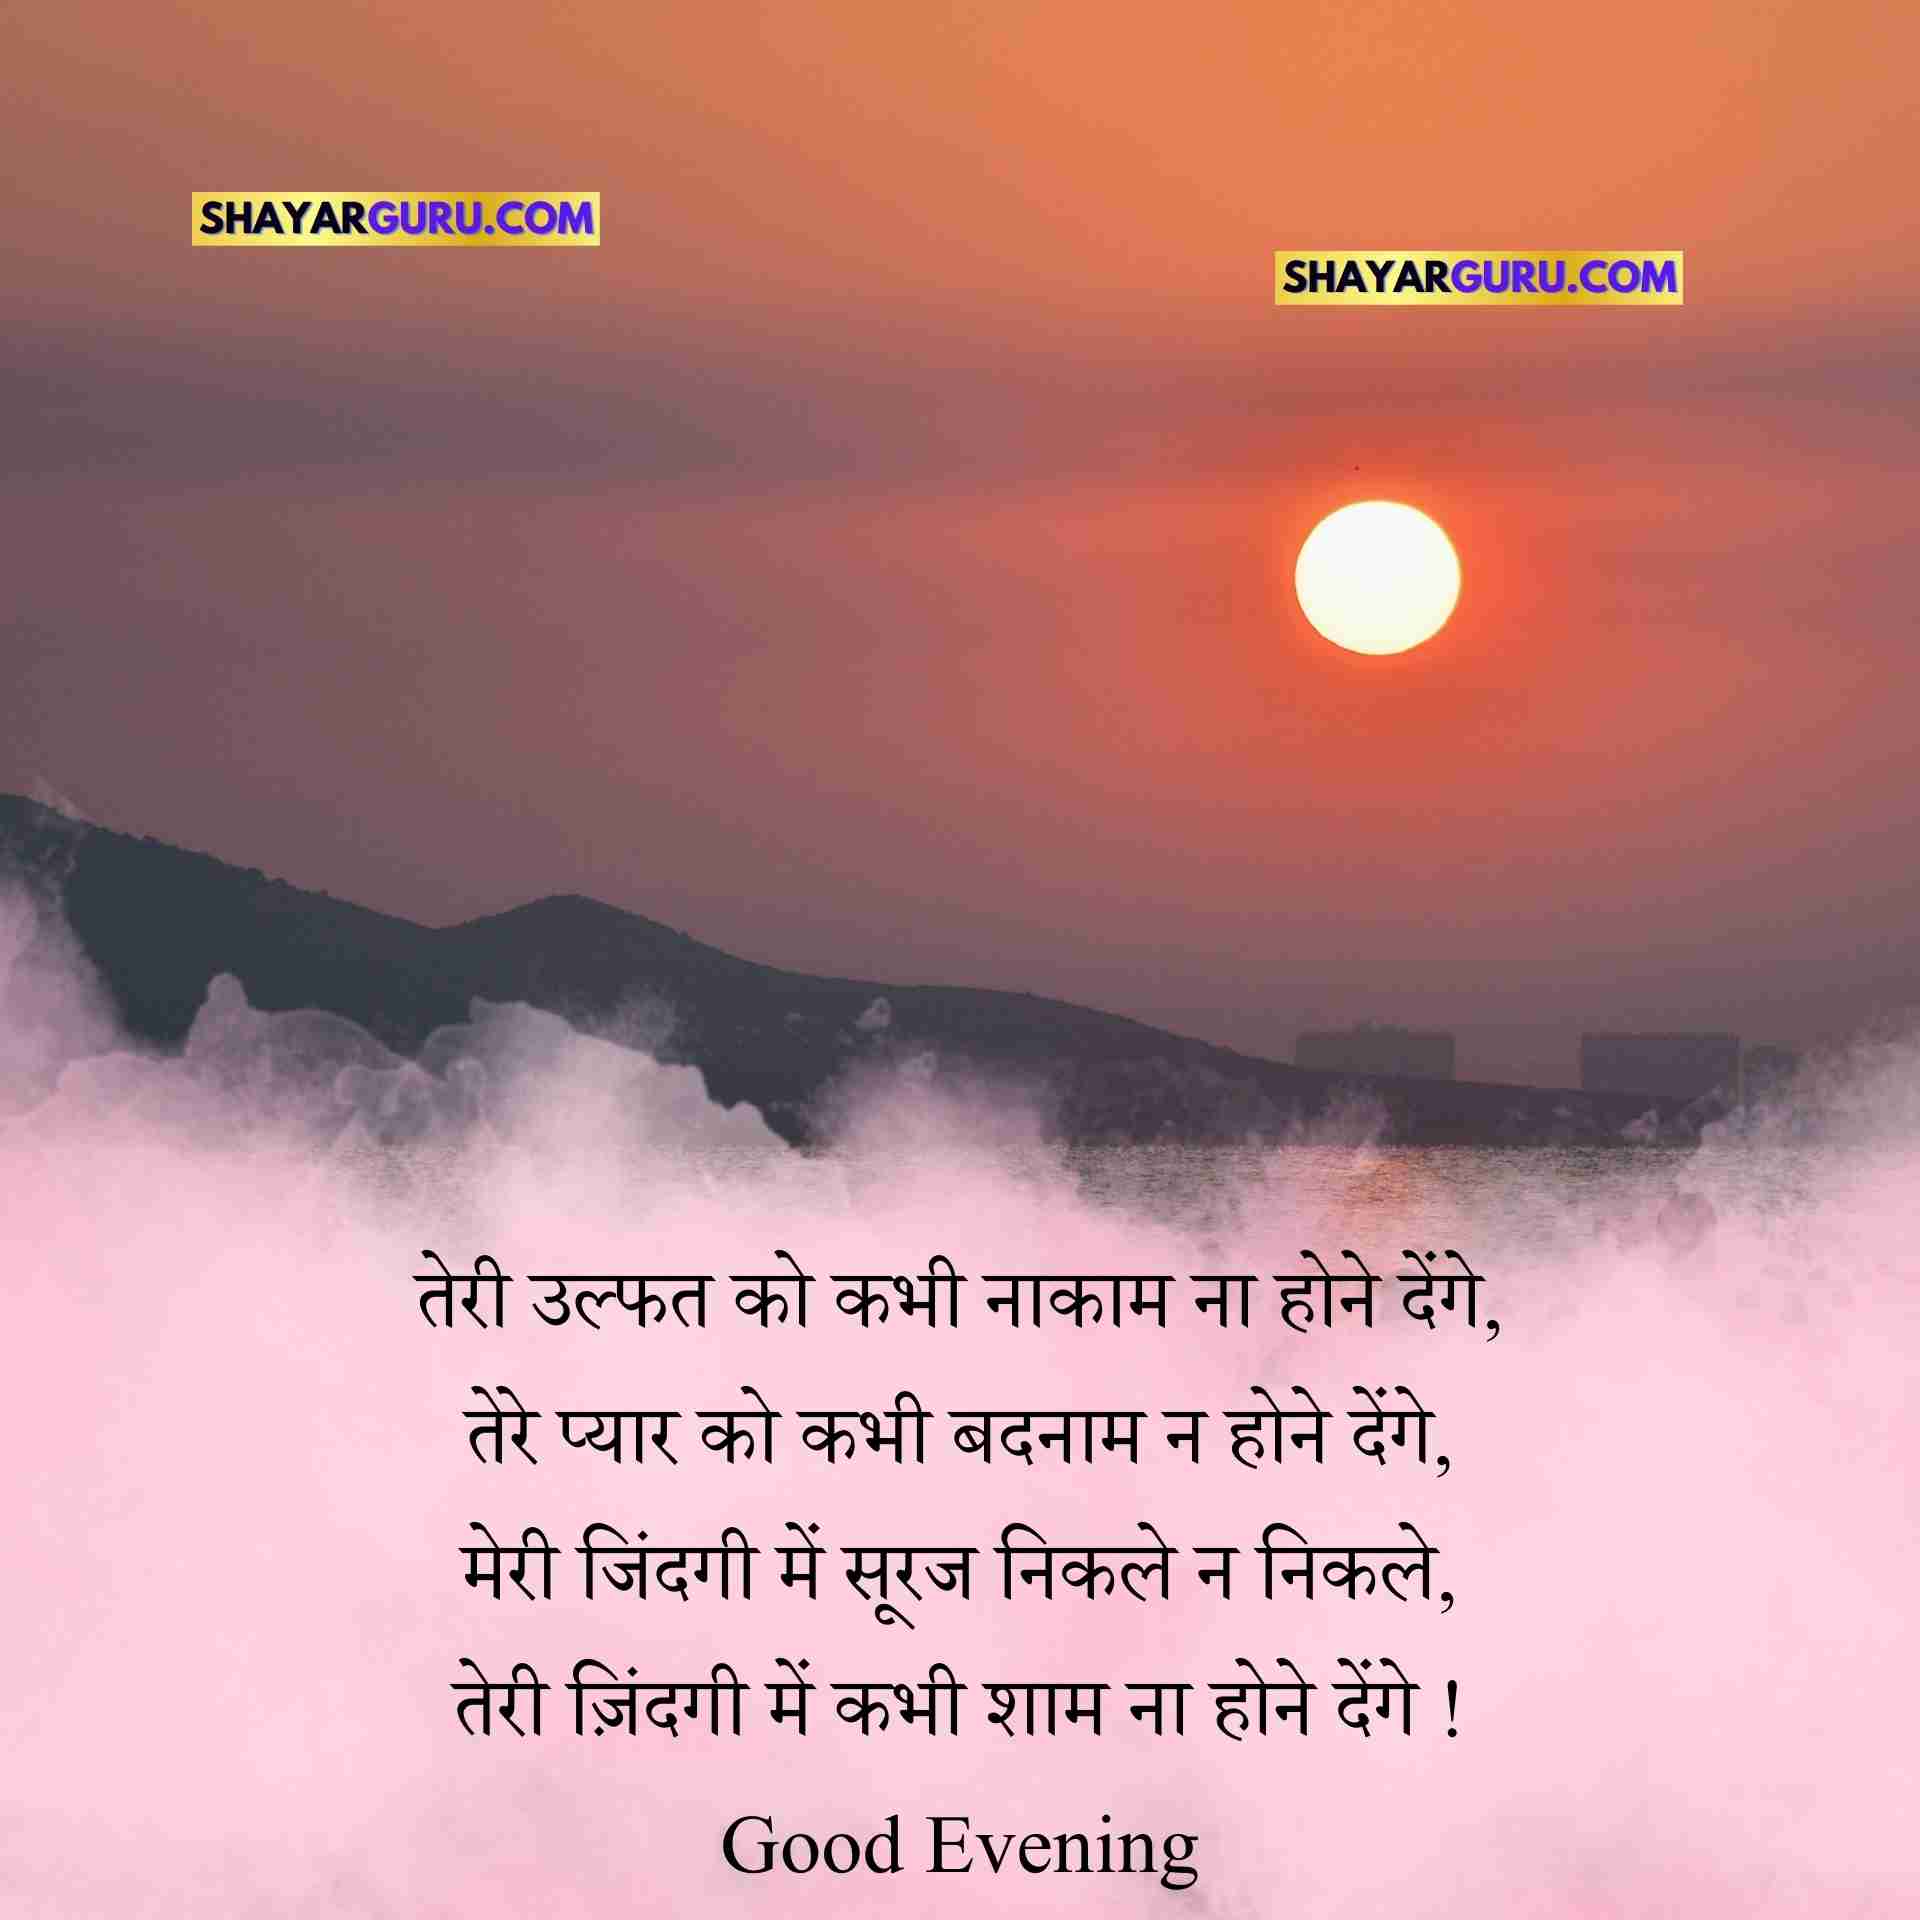 Good Evening Shayari image in Hindi